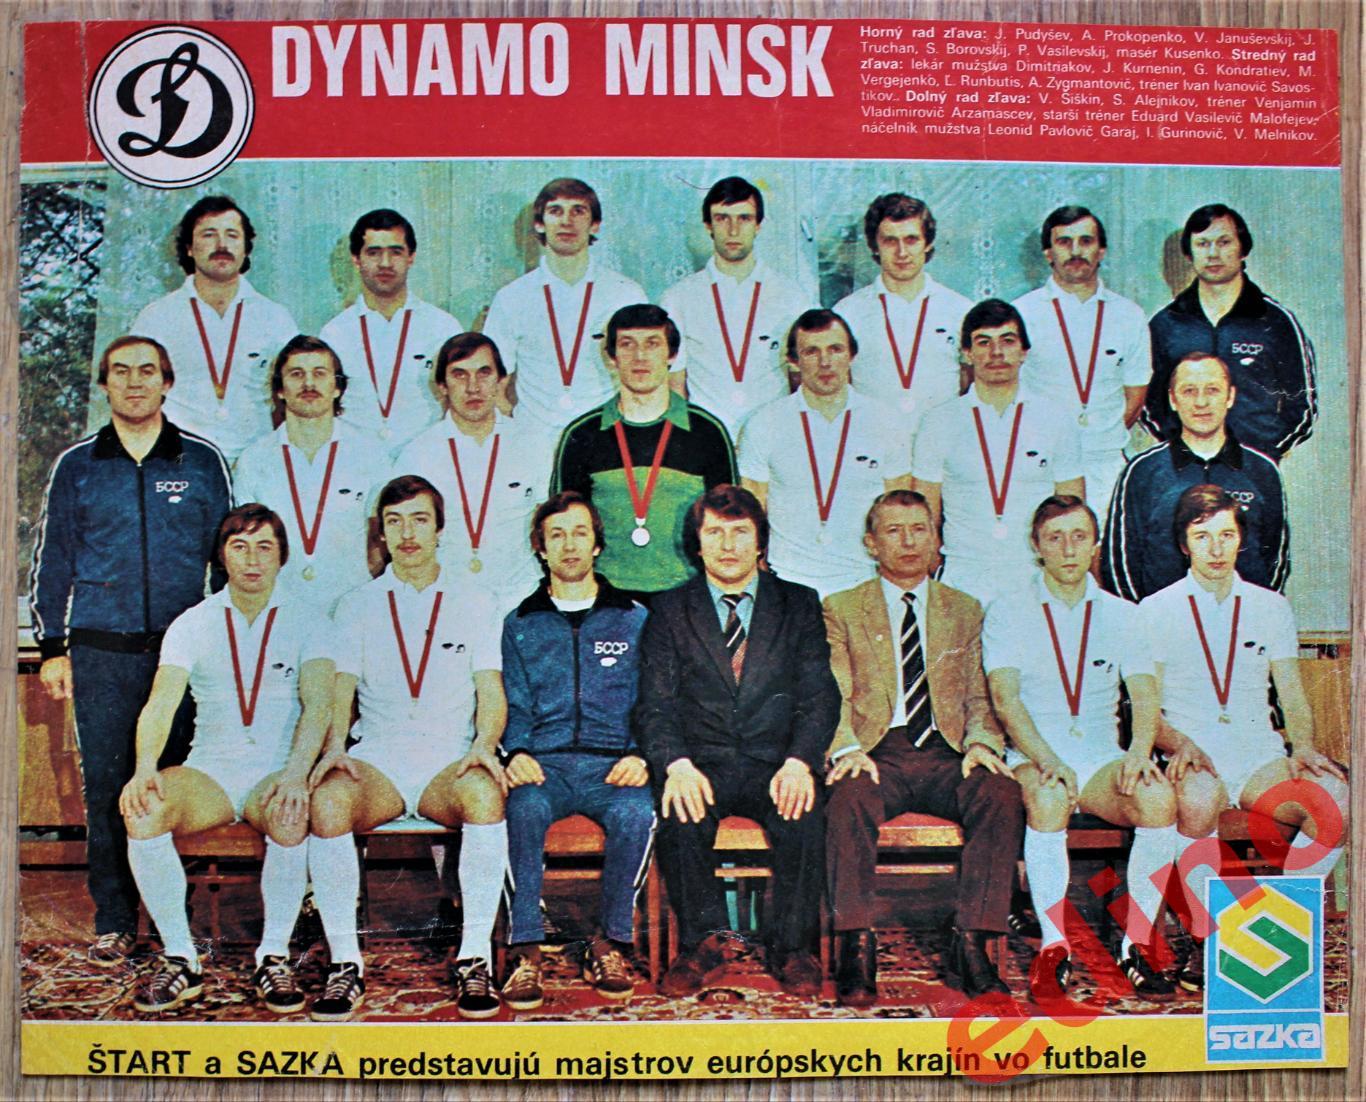 журнал Старт 1982 г. Динамо Минск СССР